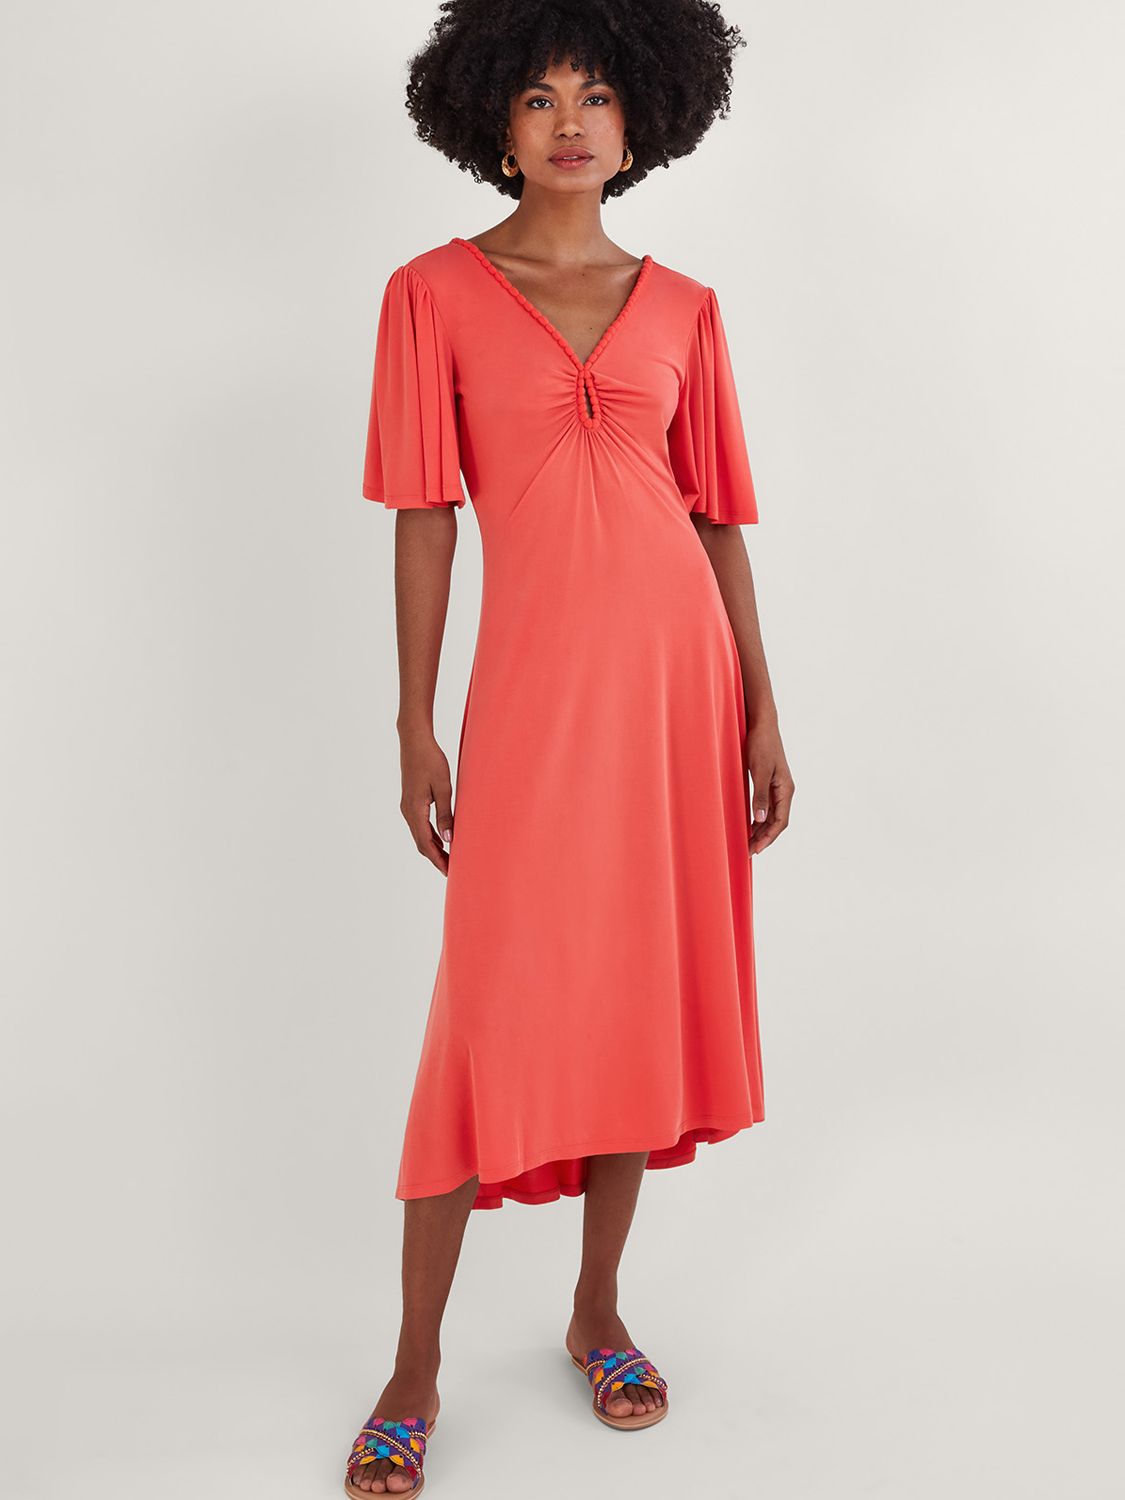 Monsoon Jersey Pom-Pom Trim Dress, Pink, XXL